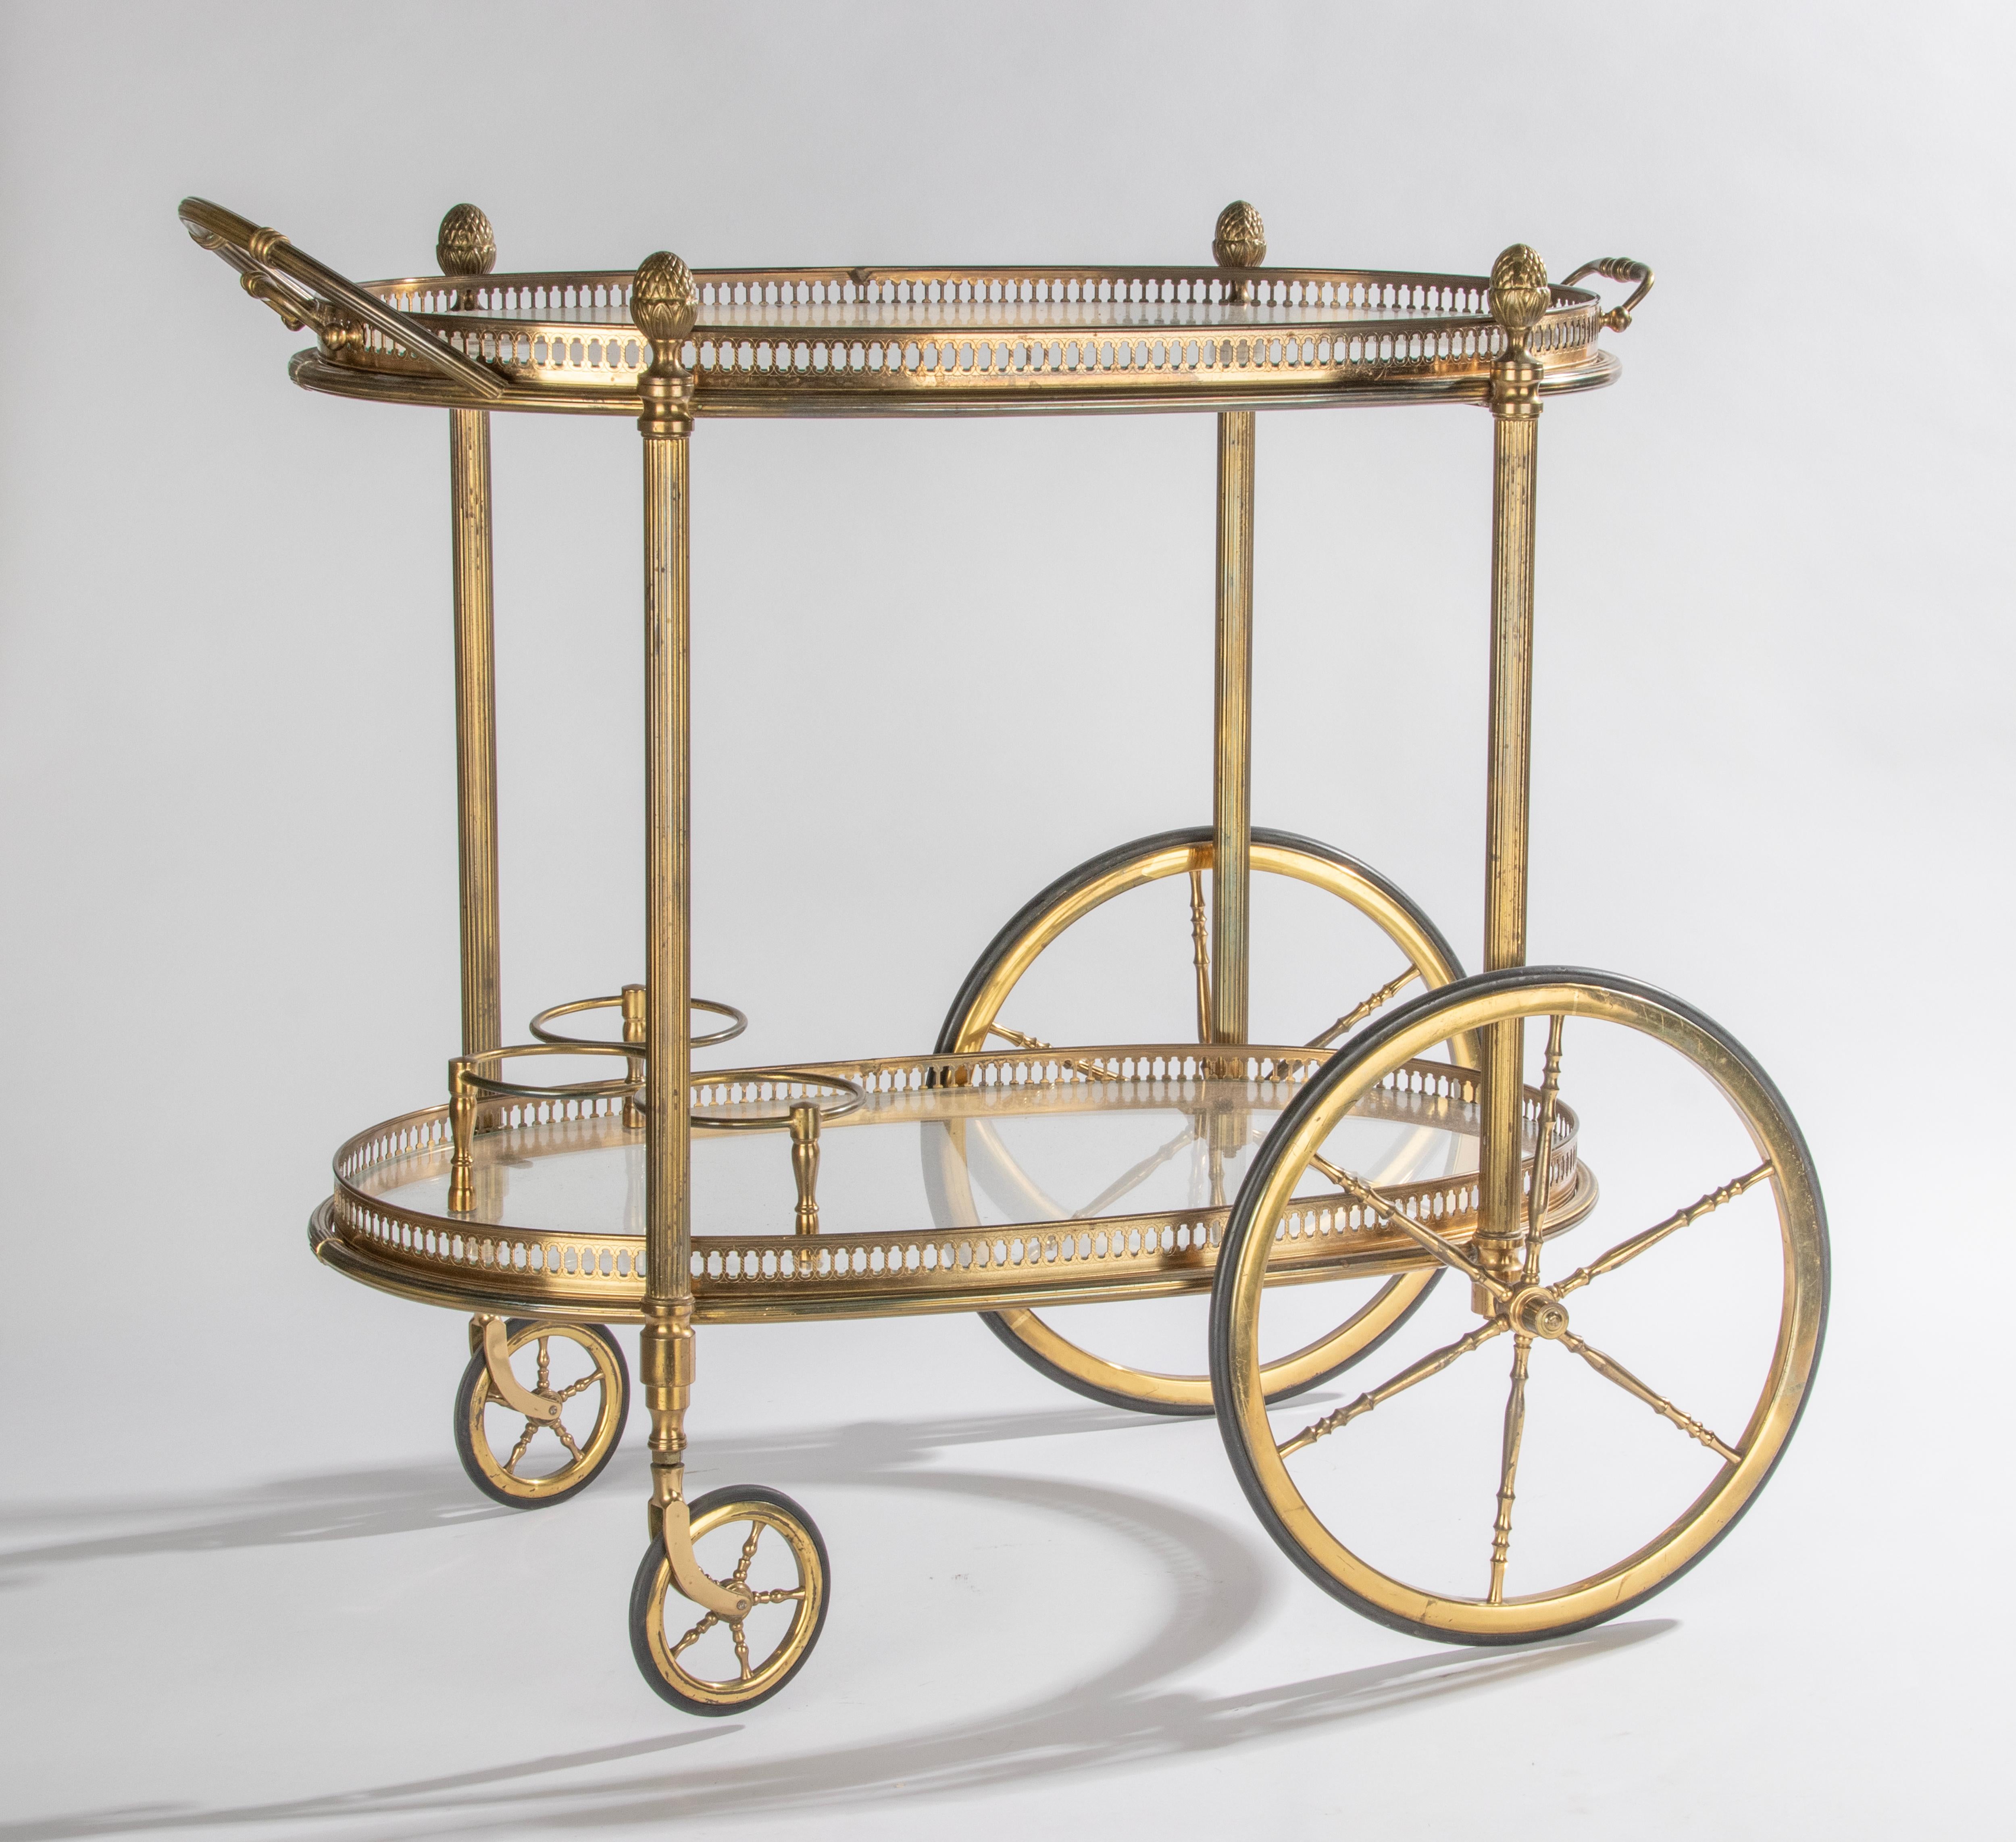 Elegant chariot de bar à deux niveaux avec verre, attribué à la Maison Baguès, Paris. Le chariot est en métal et verre de couleur laiton, avec de beaux détails raffinés, comme les galeries en laiton percées, les poignées et les pommes de pin